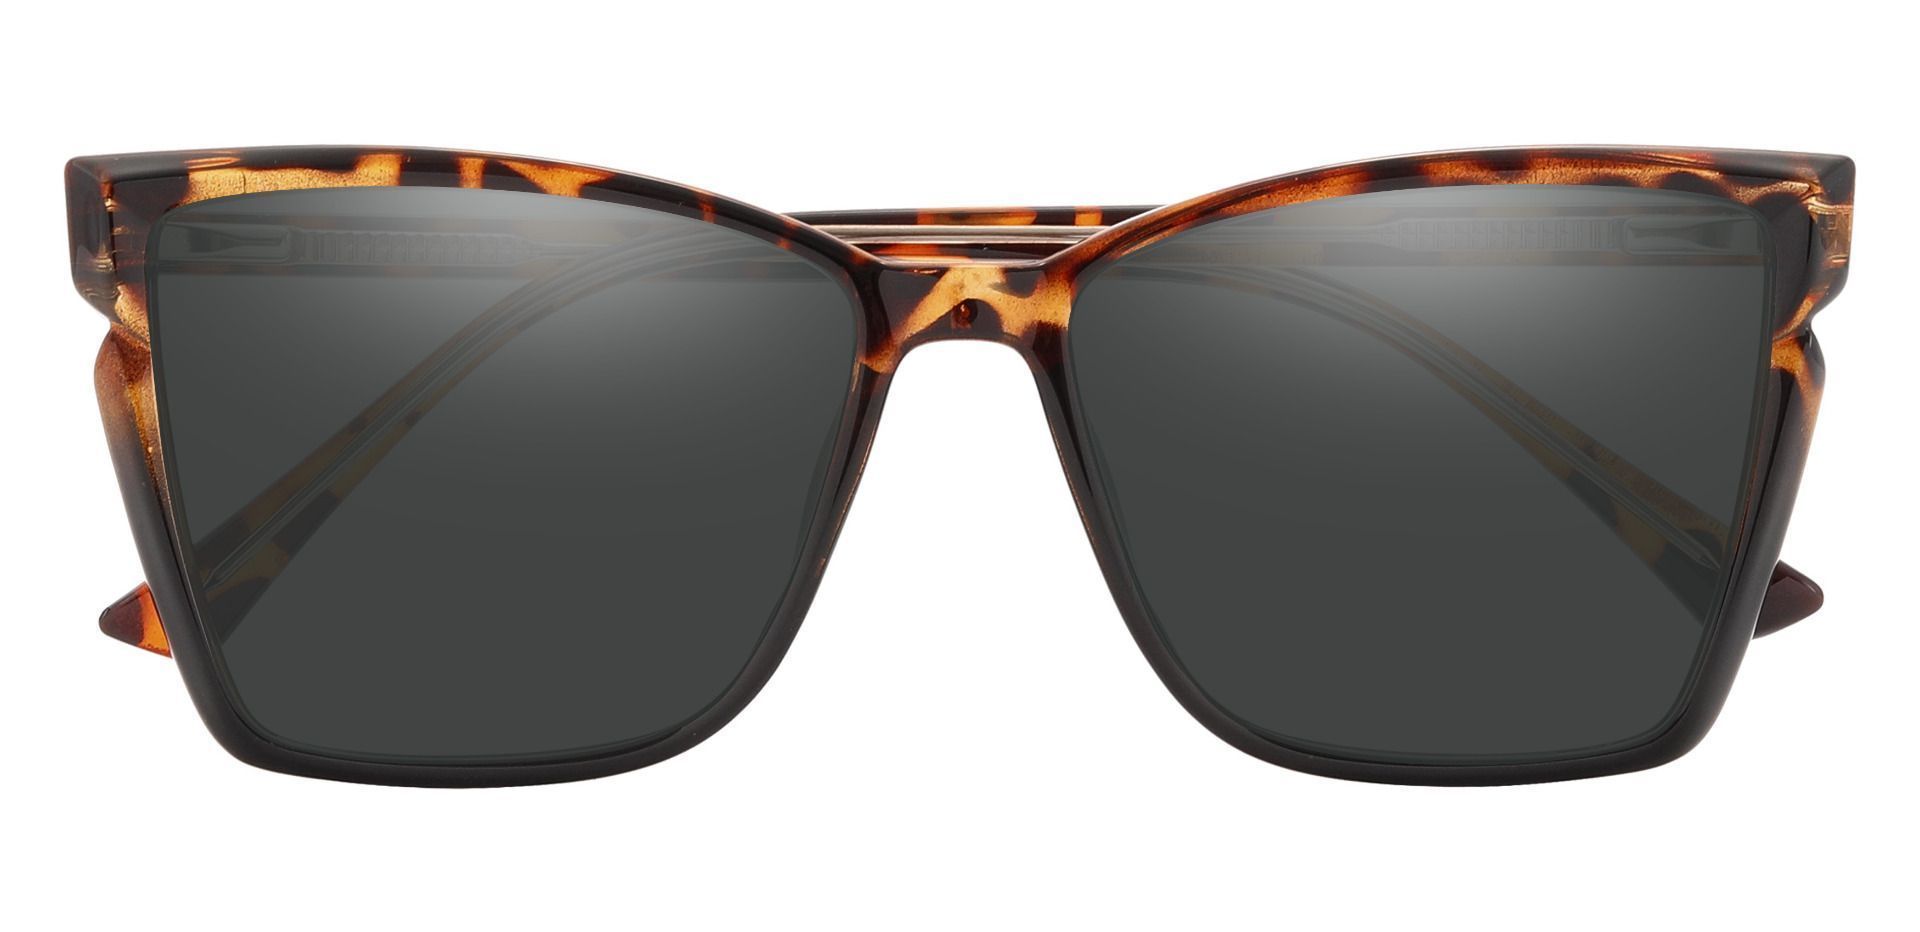 Meera Cat Eye Prescription Sunglasses - Tortoise Frame With Gray Lenses